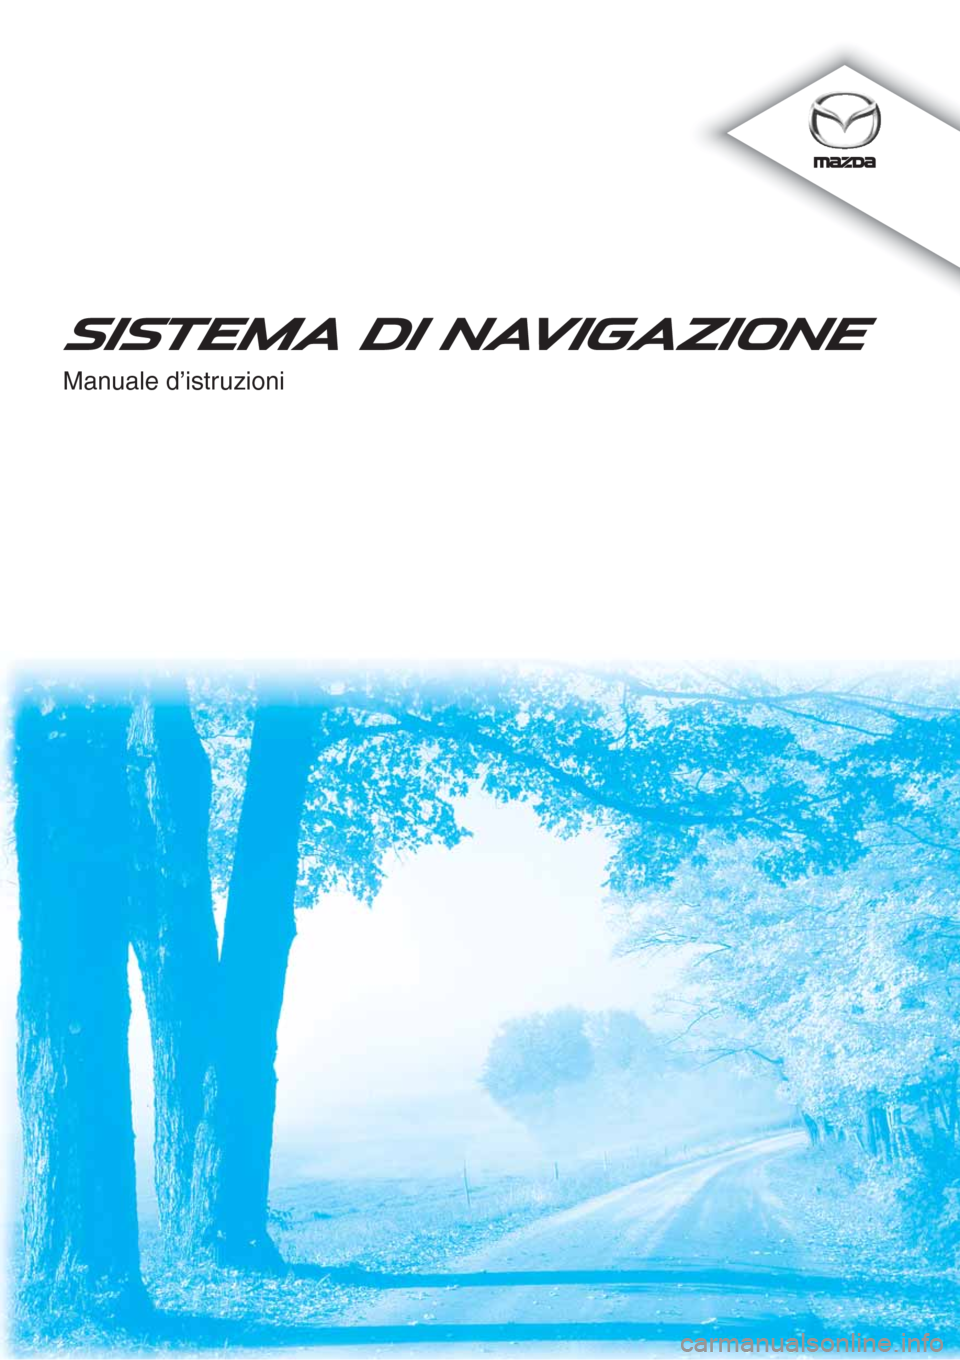 MAZDA MODEL CX-5 2013  Manuale di navigazione (in Italian)  Manuale d’istruzioni
SISTEMA DI NAVIGAZIONE 